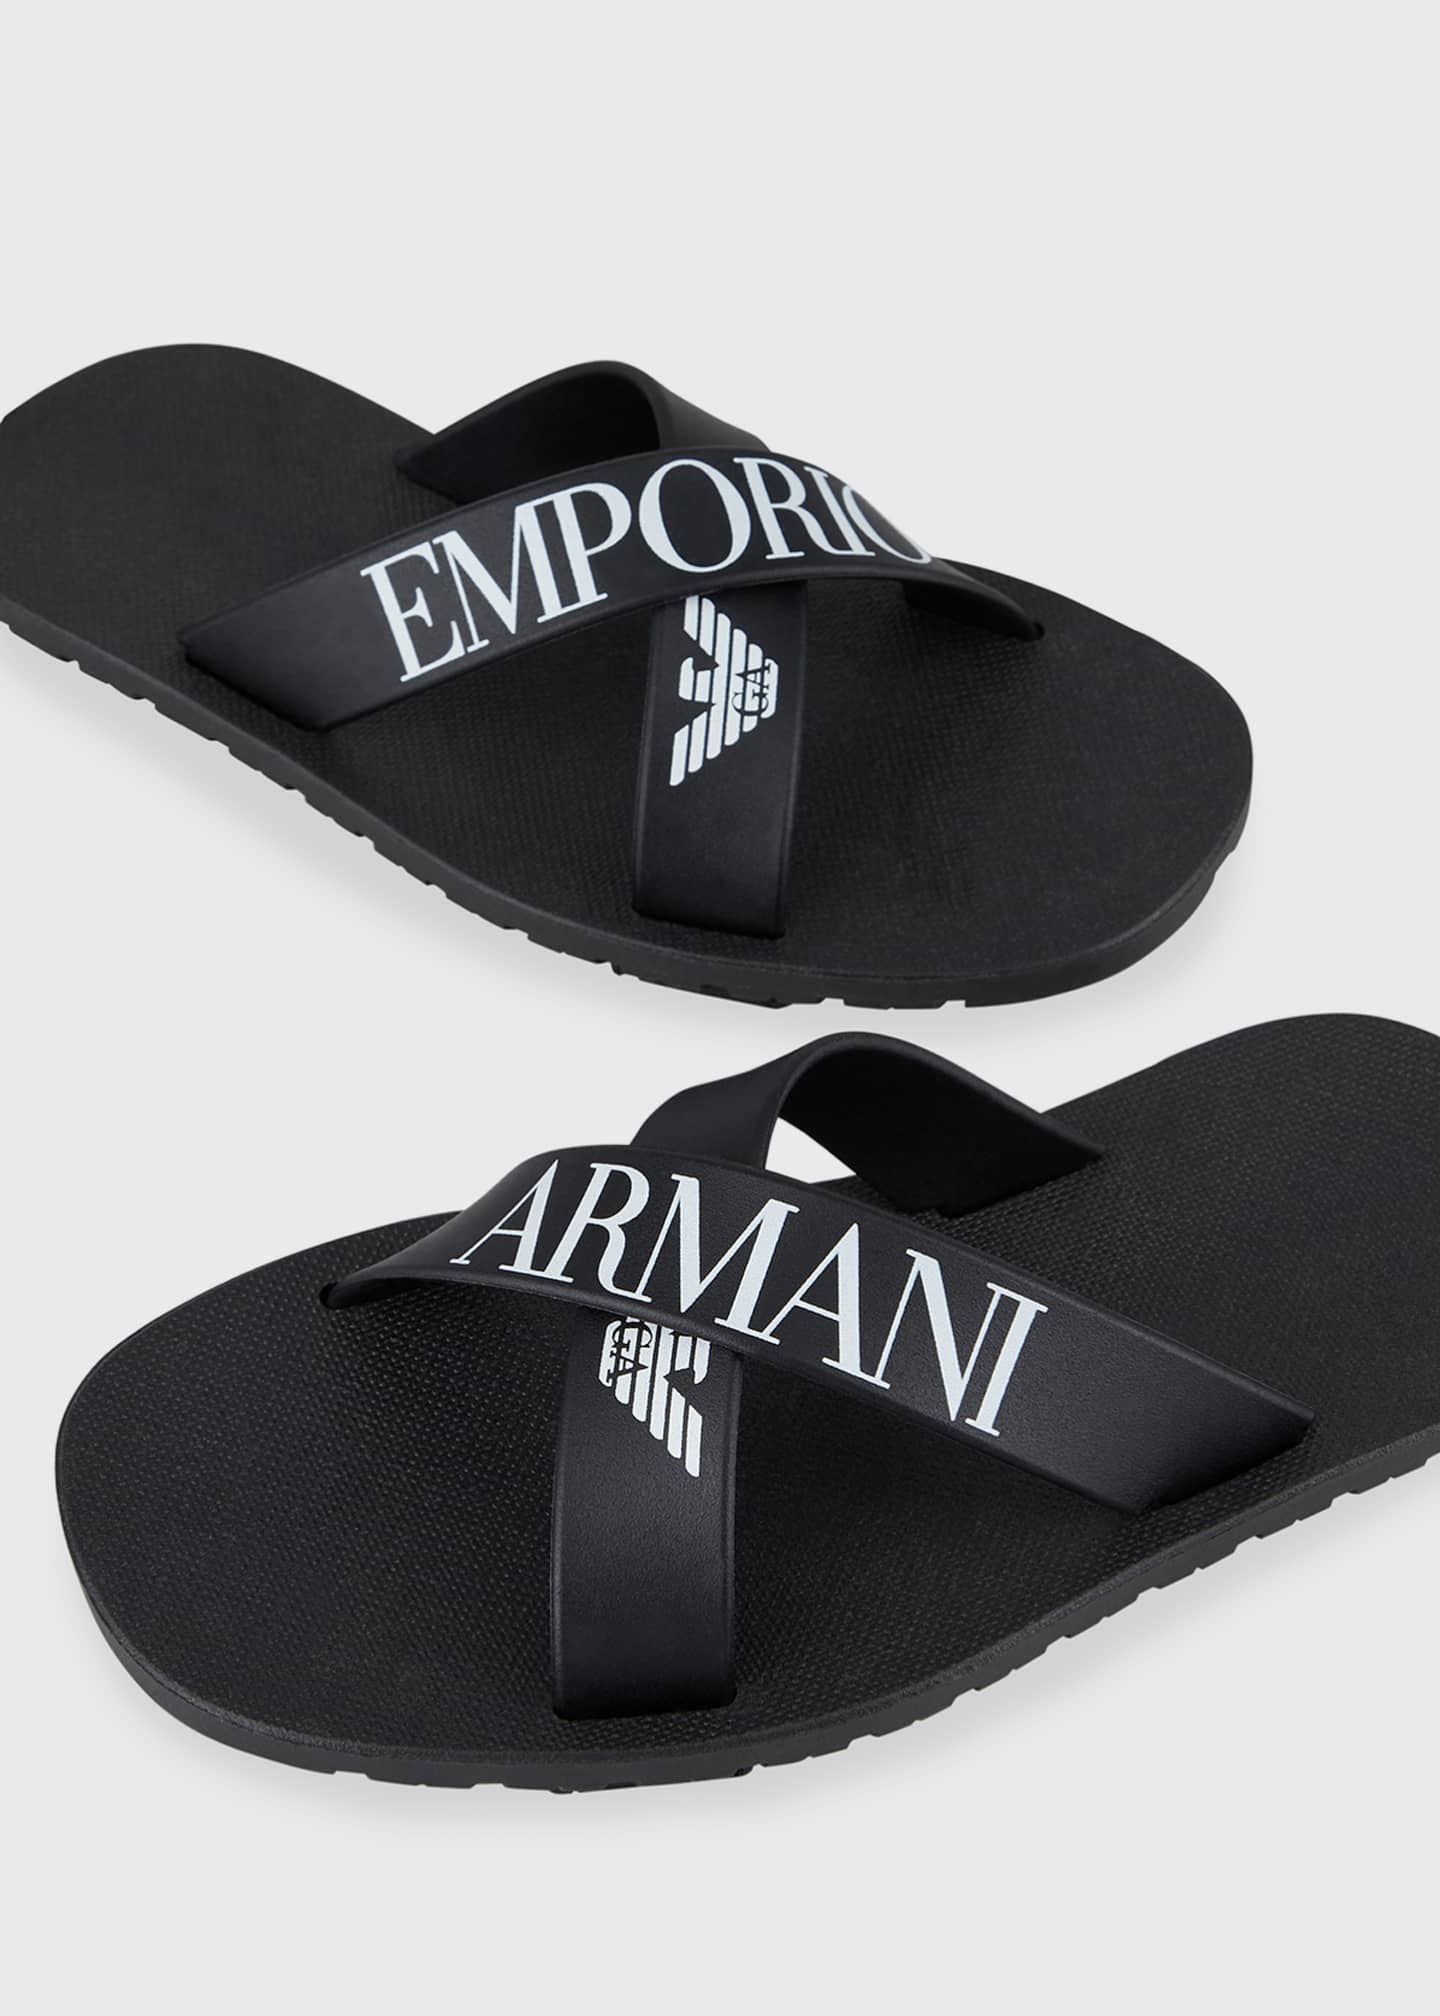 vooroordeel uitglijden snor Emporio Armani Boy's Logo Pool Slide Sandals, Toddler/Kids - Bergdorf  Goodman